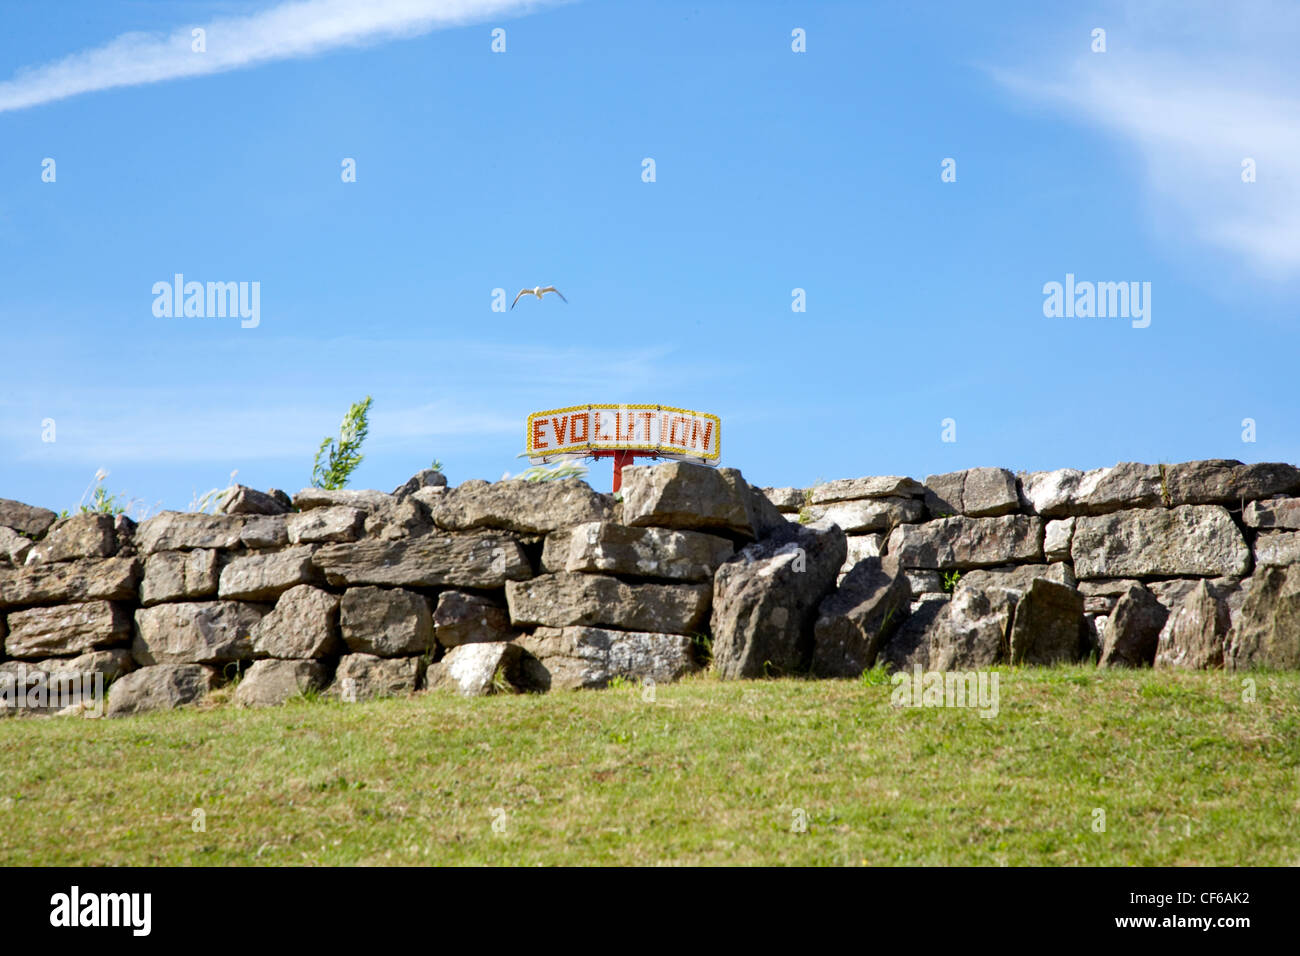 Le sommet d'un fun fair ride est visible derrière un vieux mur de pierre sur l'île de Barry à Glamorgan. Banque D'Images